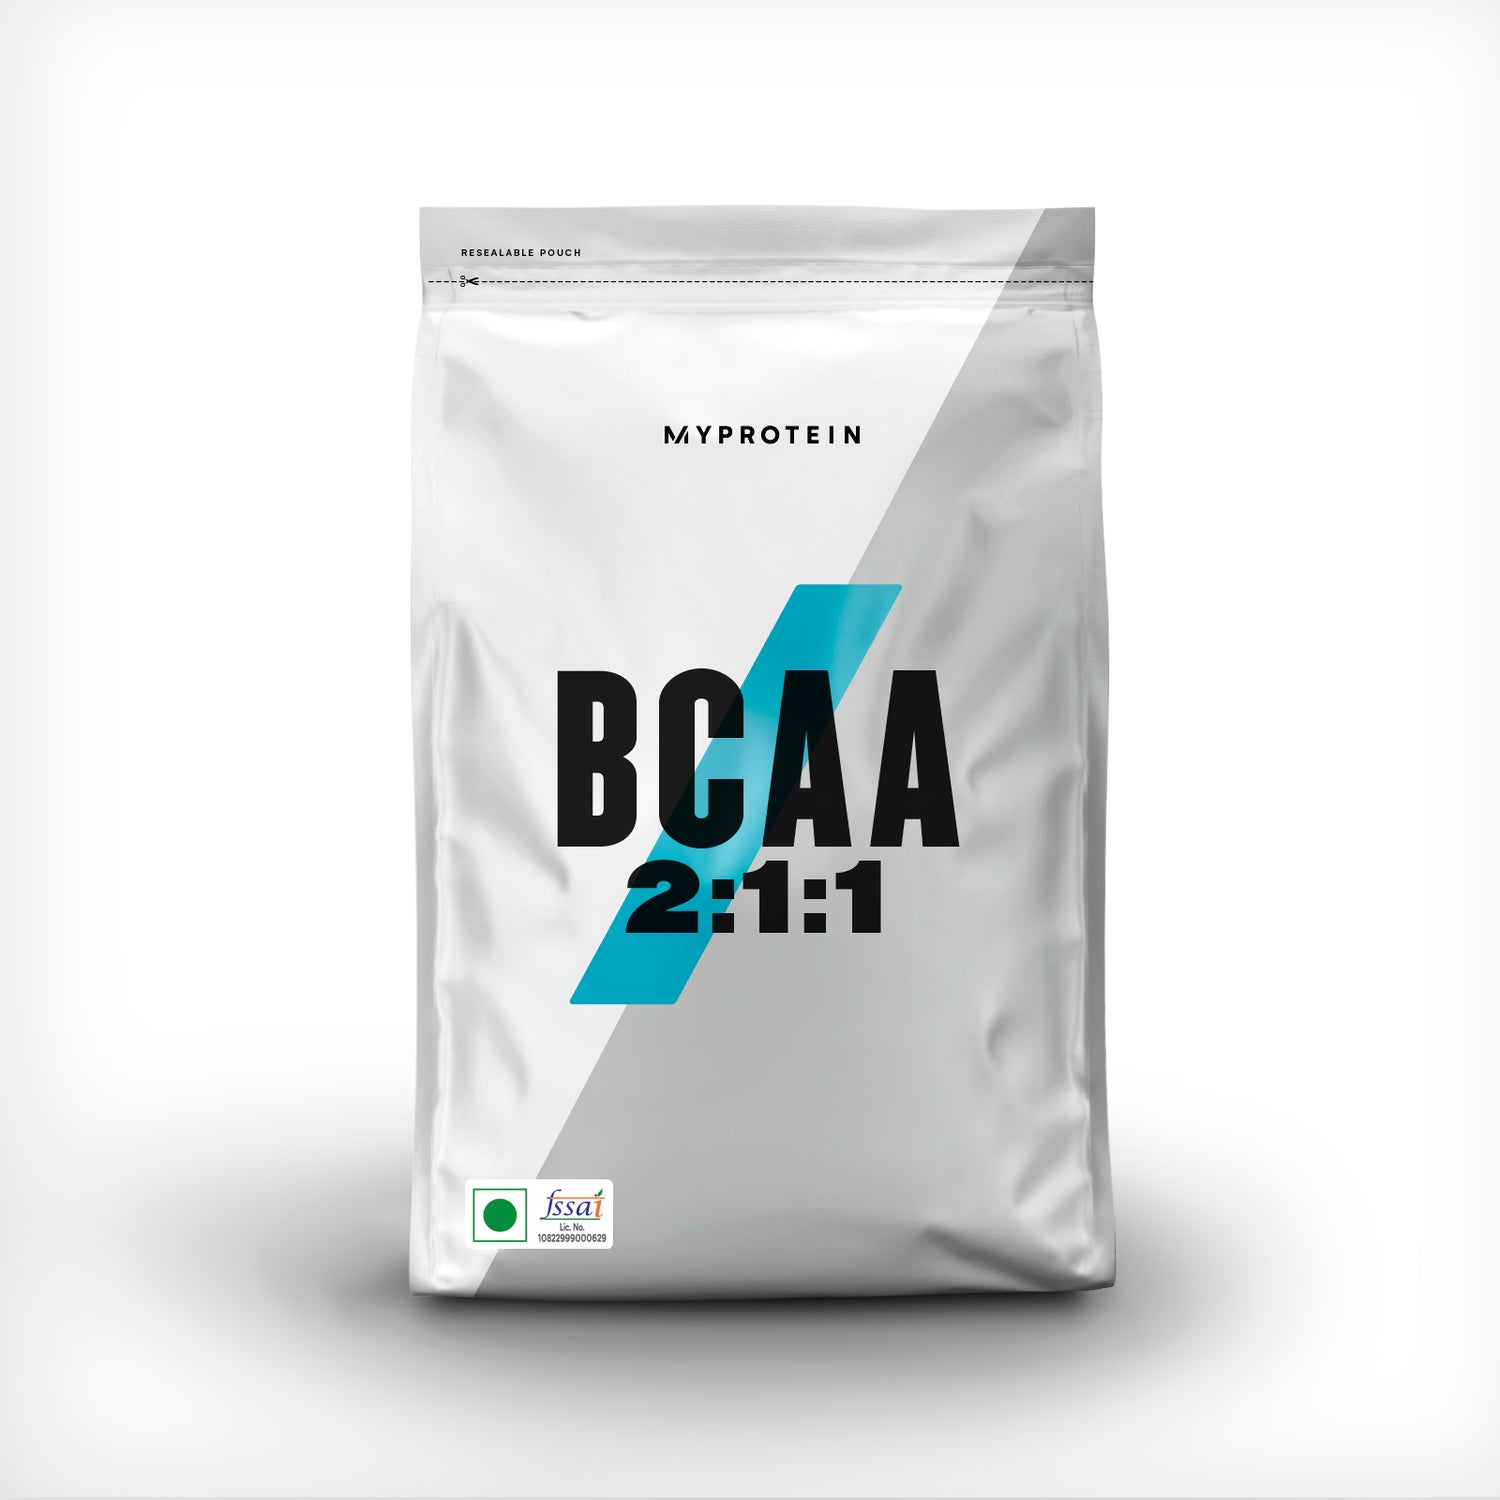 BCAA 2:1:1 Powder - 500g - Unflavored